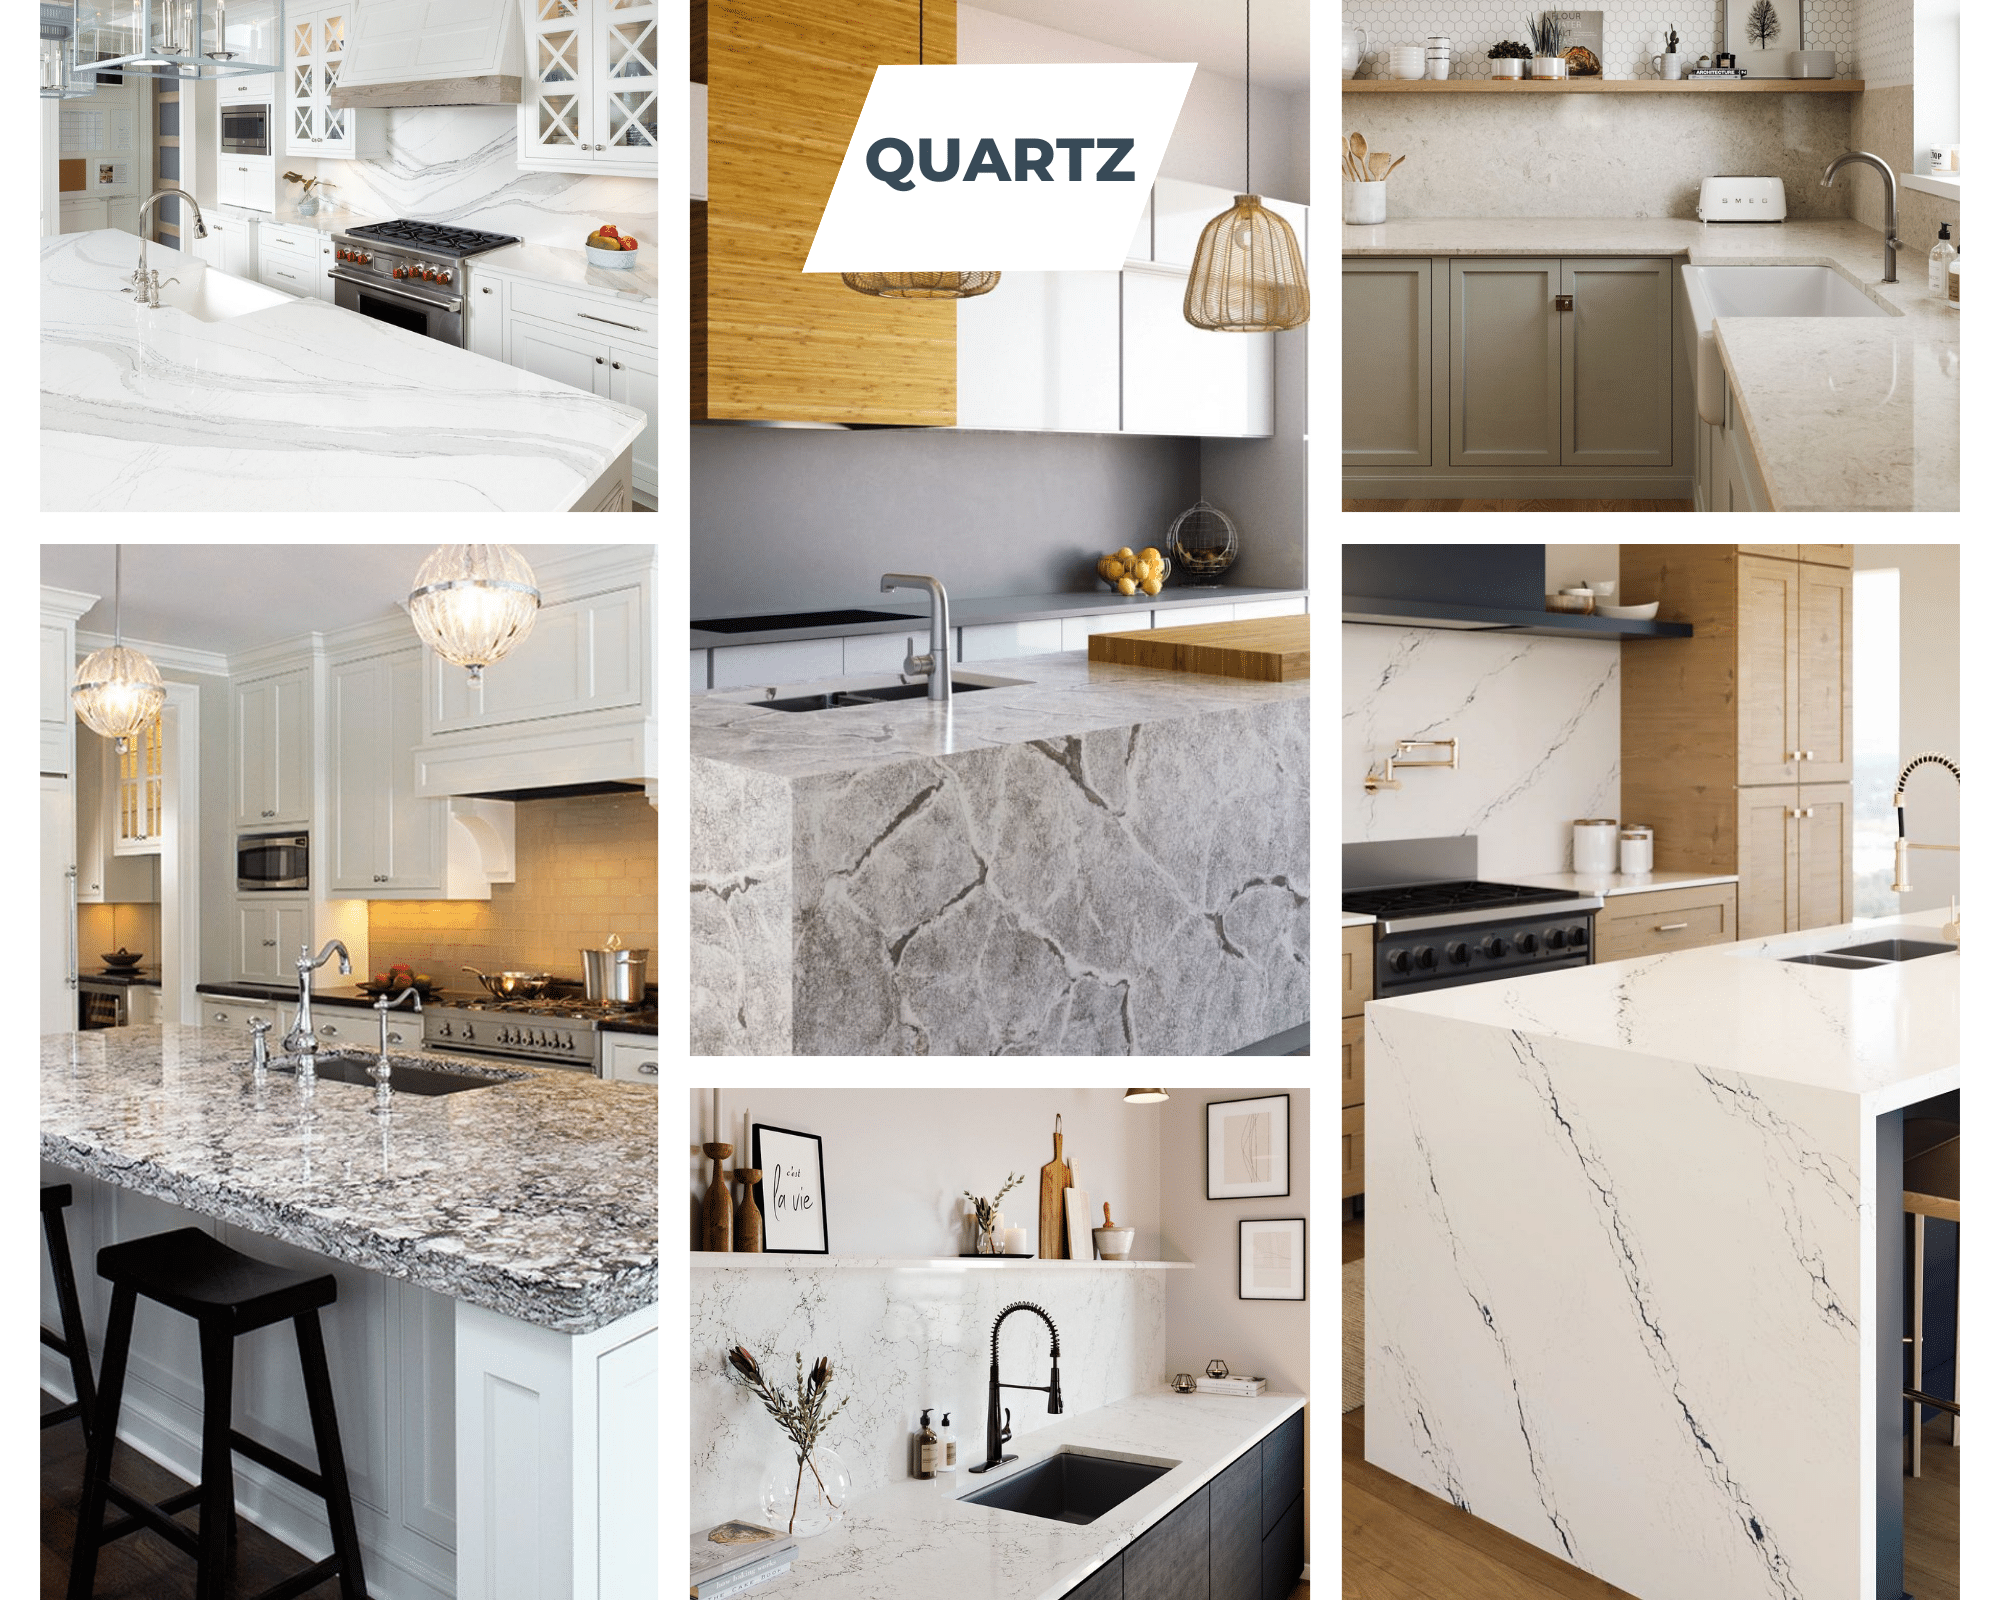 Quartz countertops collage